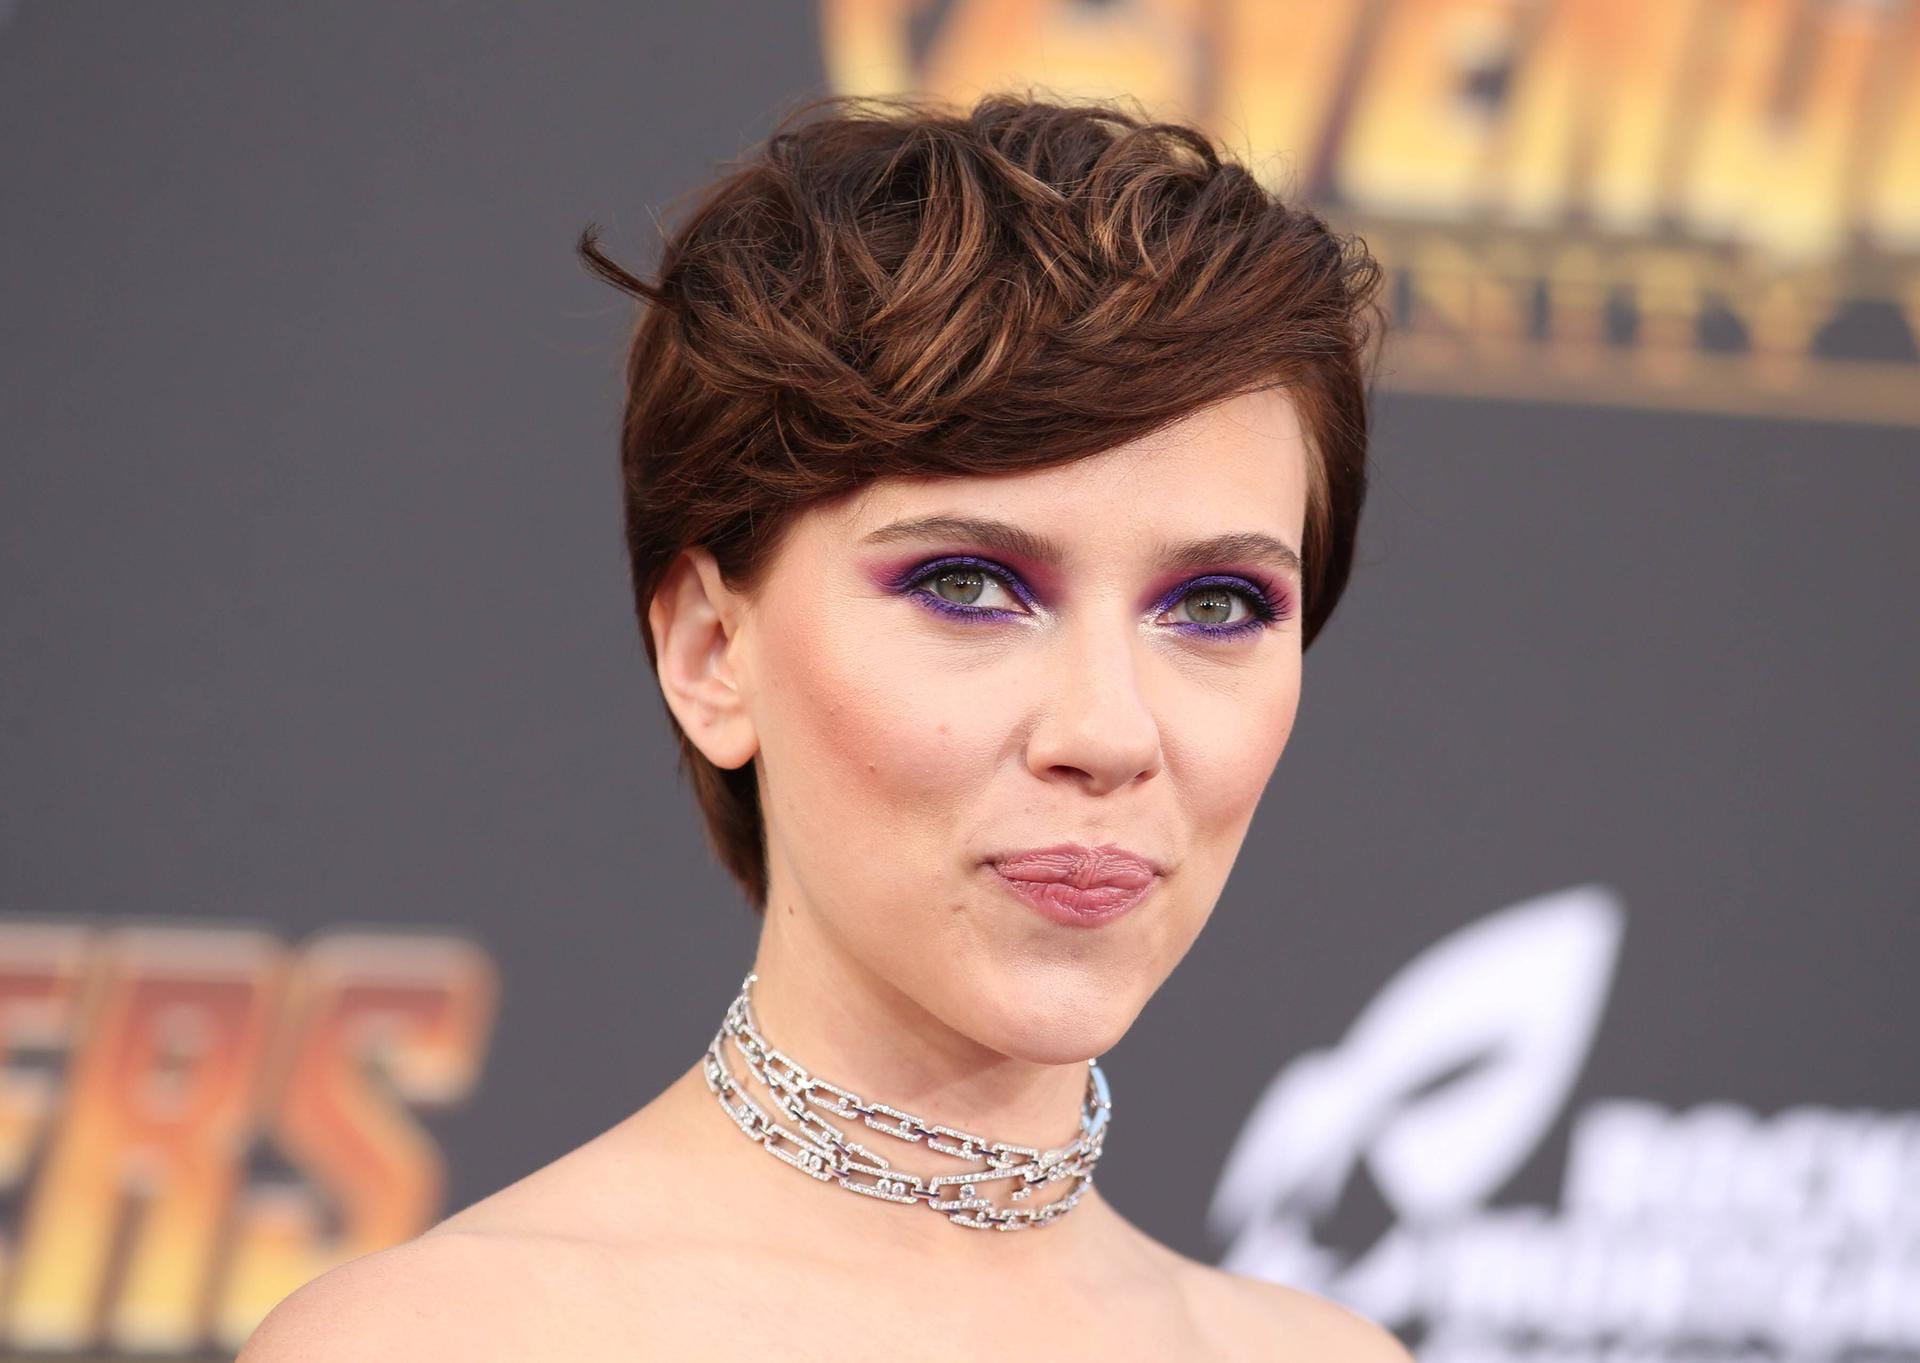 Auch Prominente wie Scarlett Johansson mögen den frechen Charme des Pixie Cuts.